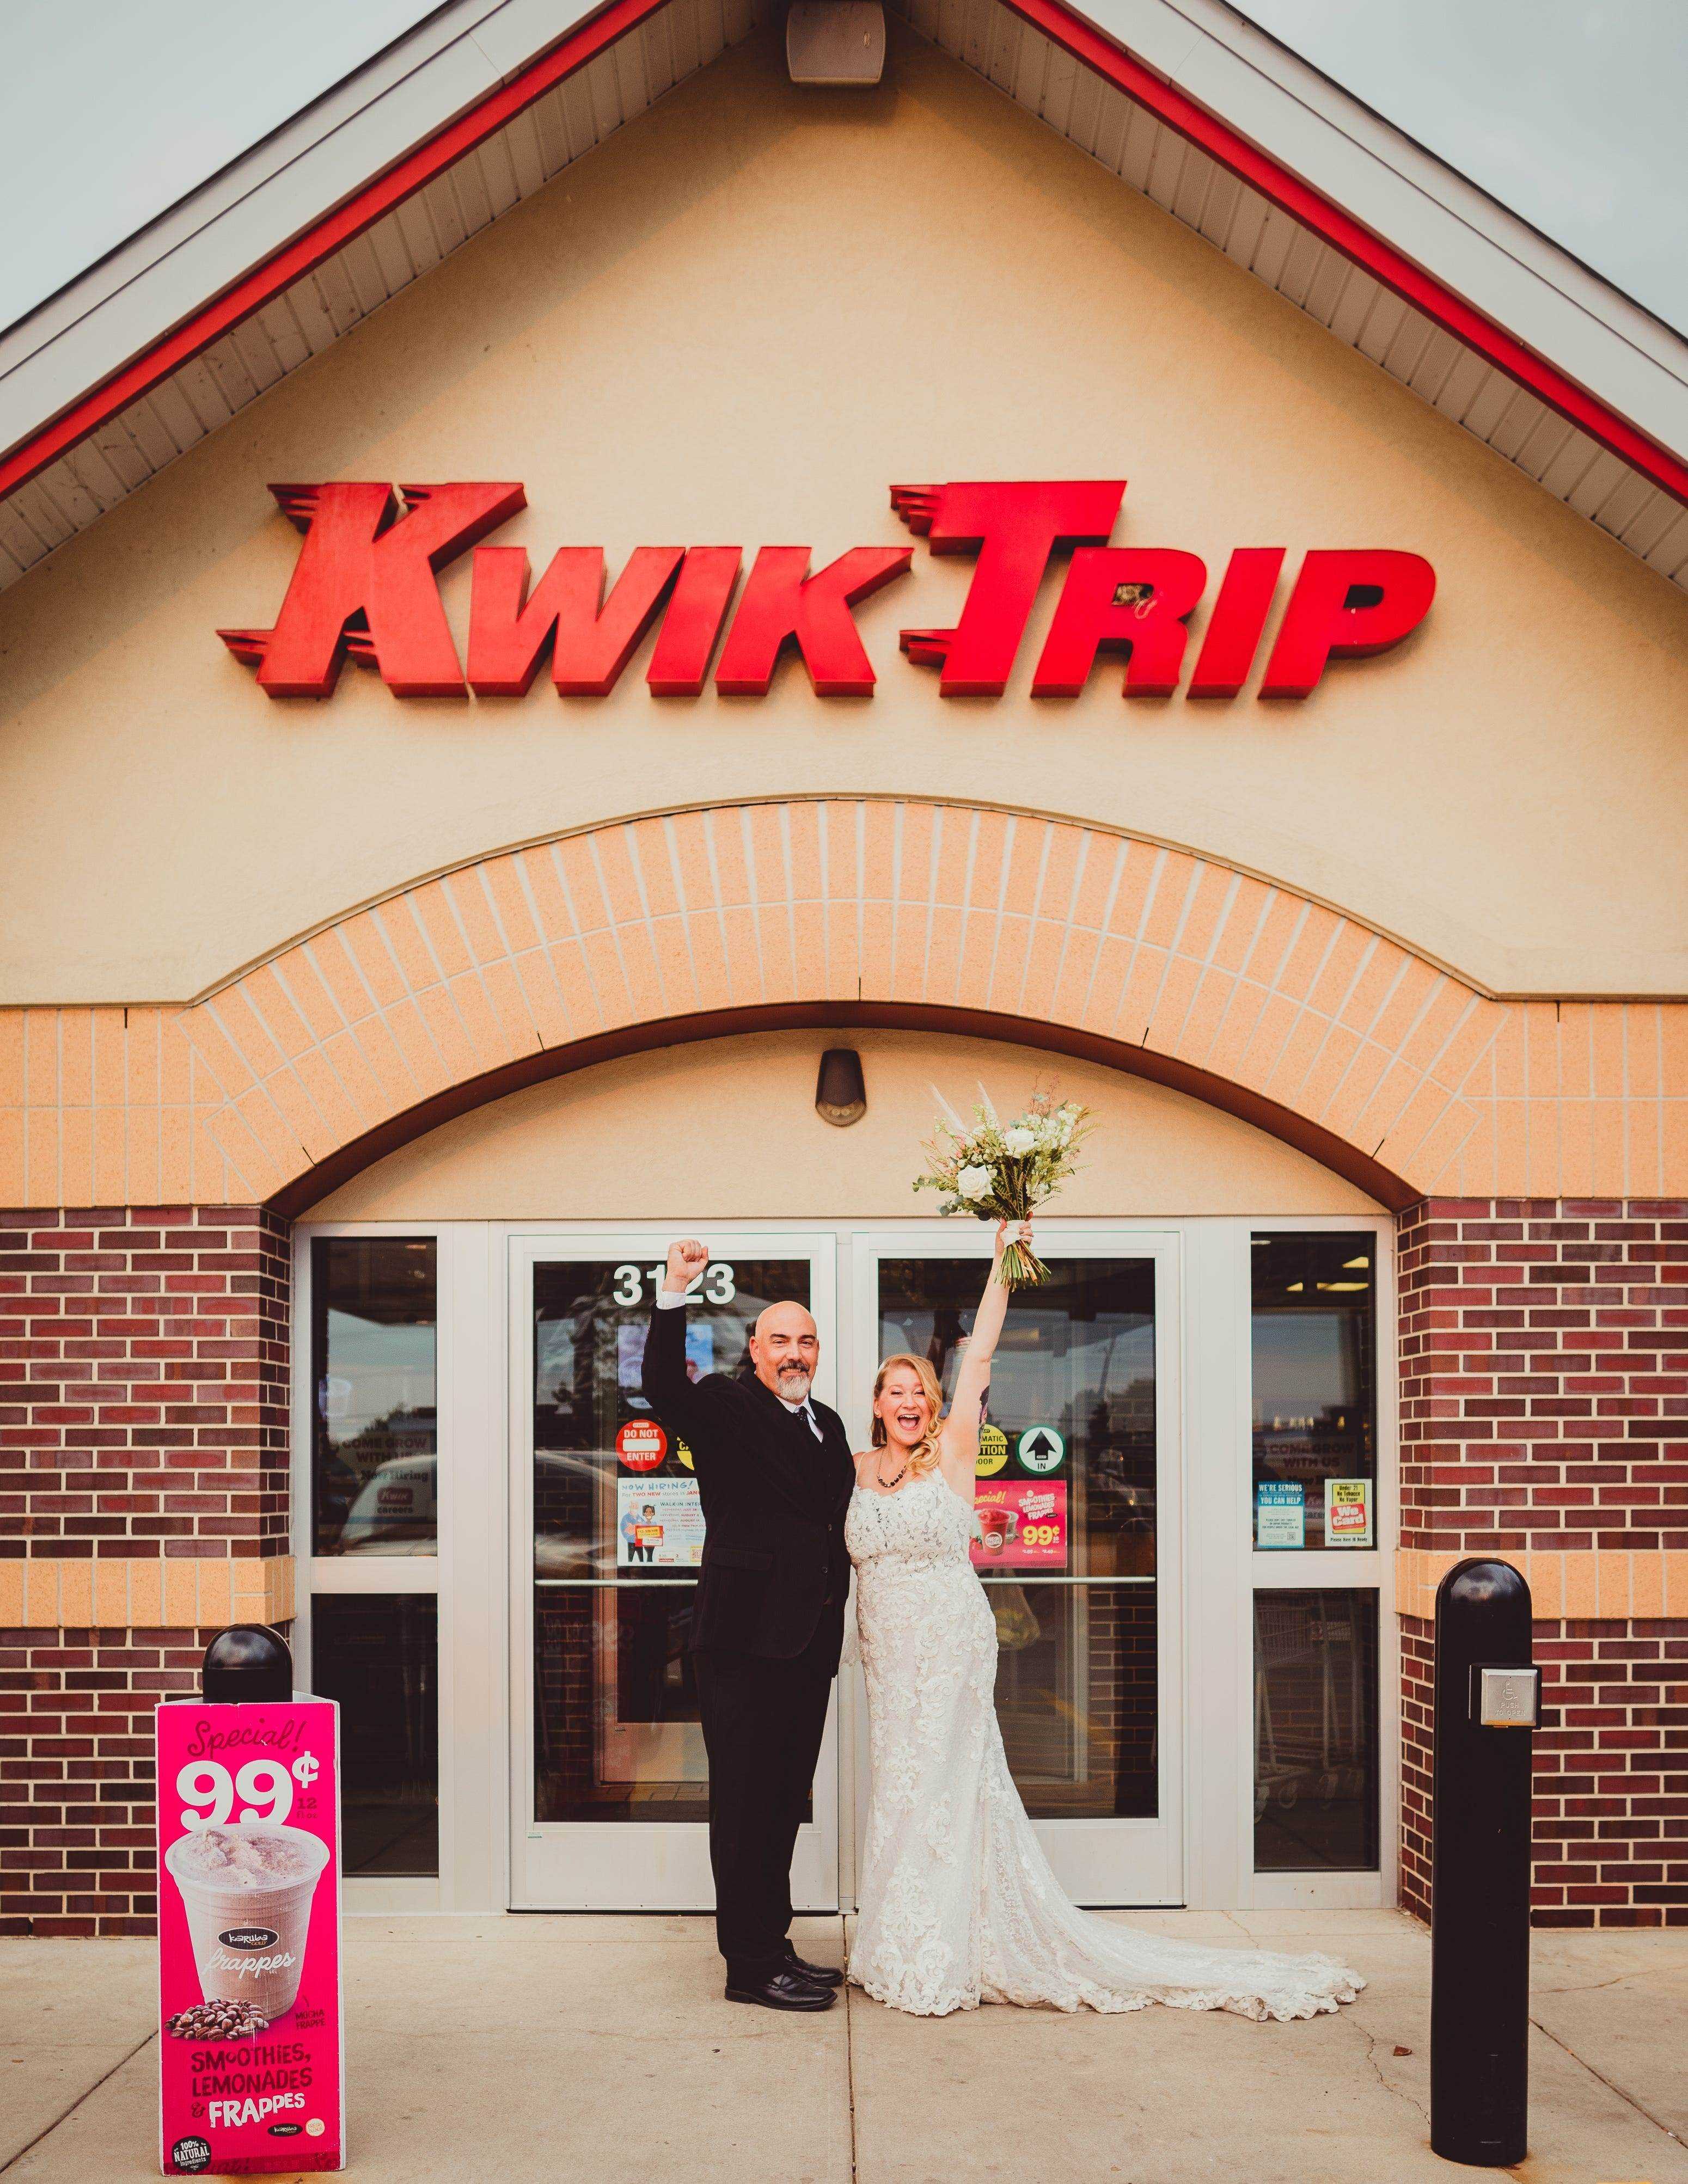 Ashley Ormes und Mark Steinke bei Kwik Trip in Hochzeitskleidung.